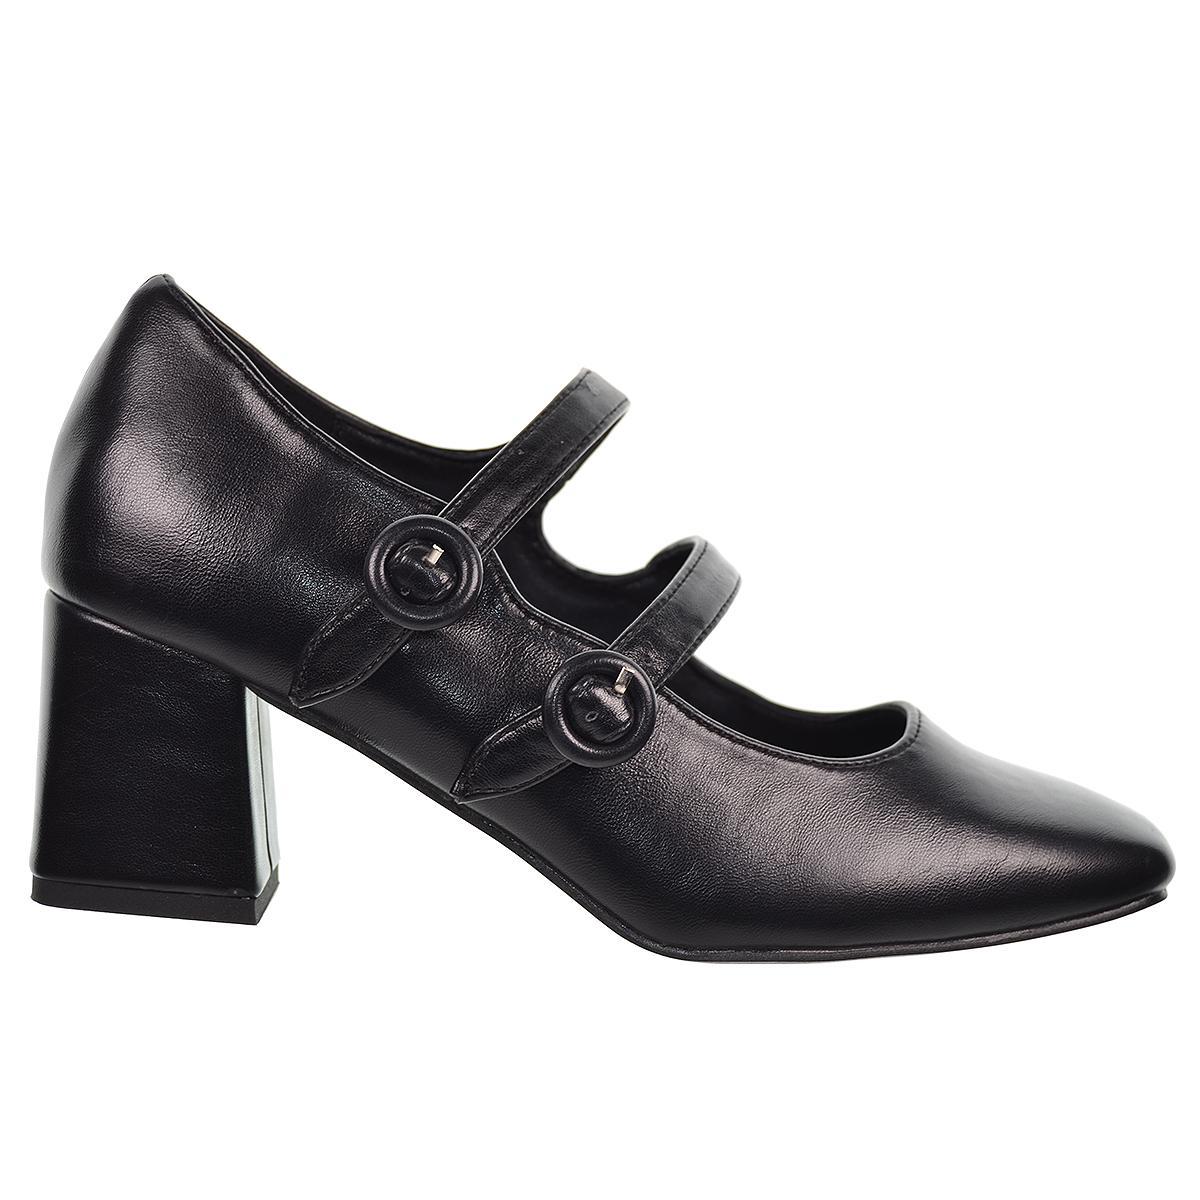 25292 D´Angela Zapato sintético. Con doble correa  y plantilla acolchada. Suela de goma con tacón ancho de 6cm de altura.